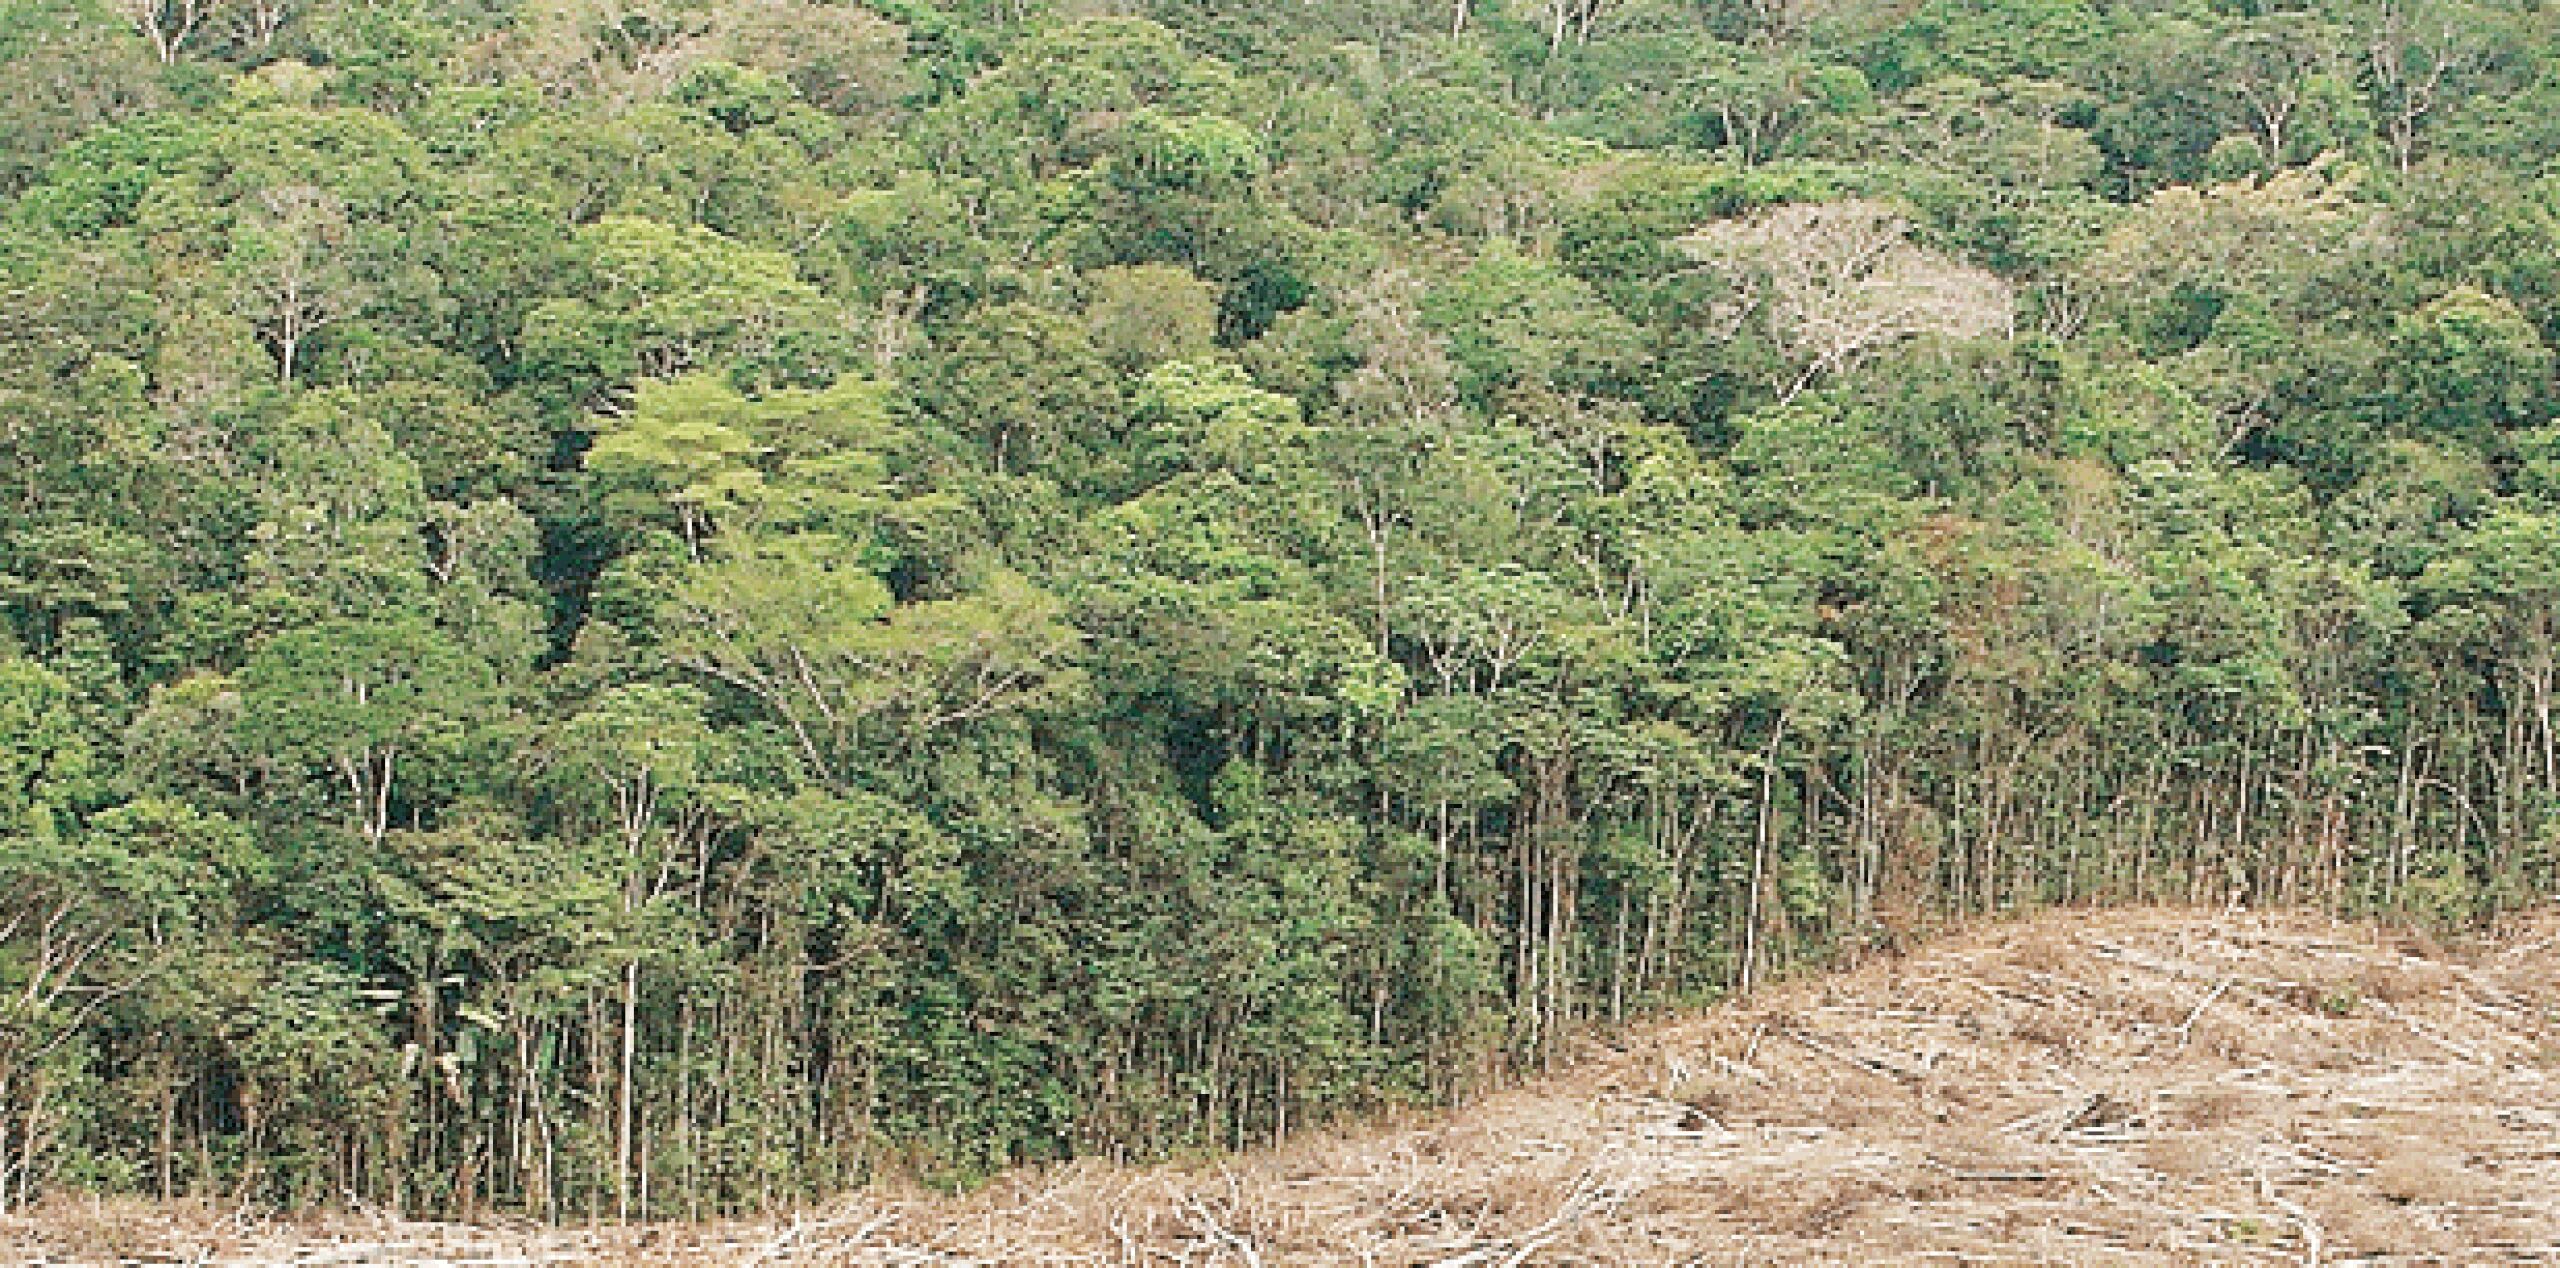 Un equipo internacional de 158 científicos encontró que, según el grado en que se controle la deforestación en los próximos 35 años, entre 36 y 57% de las 16,000 especies de árboles en el área de la selva tropical estarían consideradas en peligro. (Archivo)